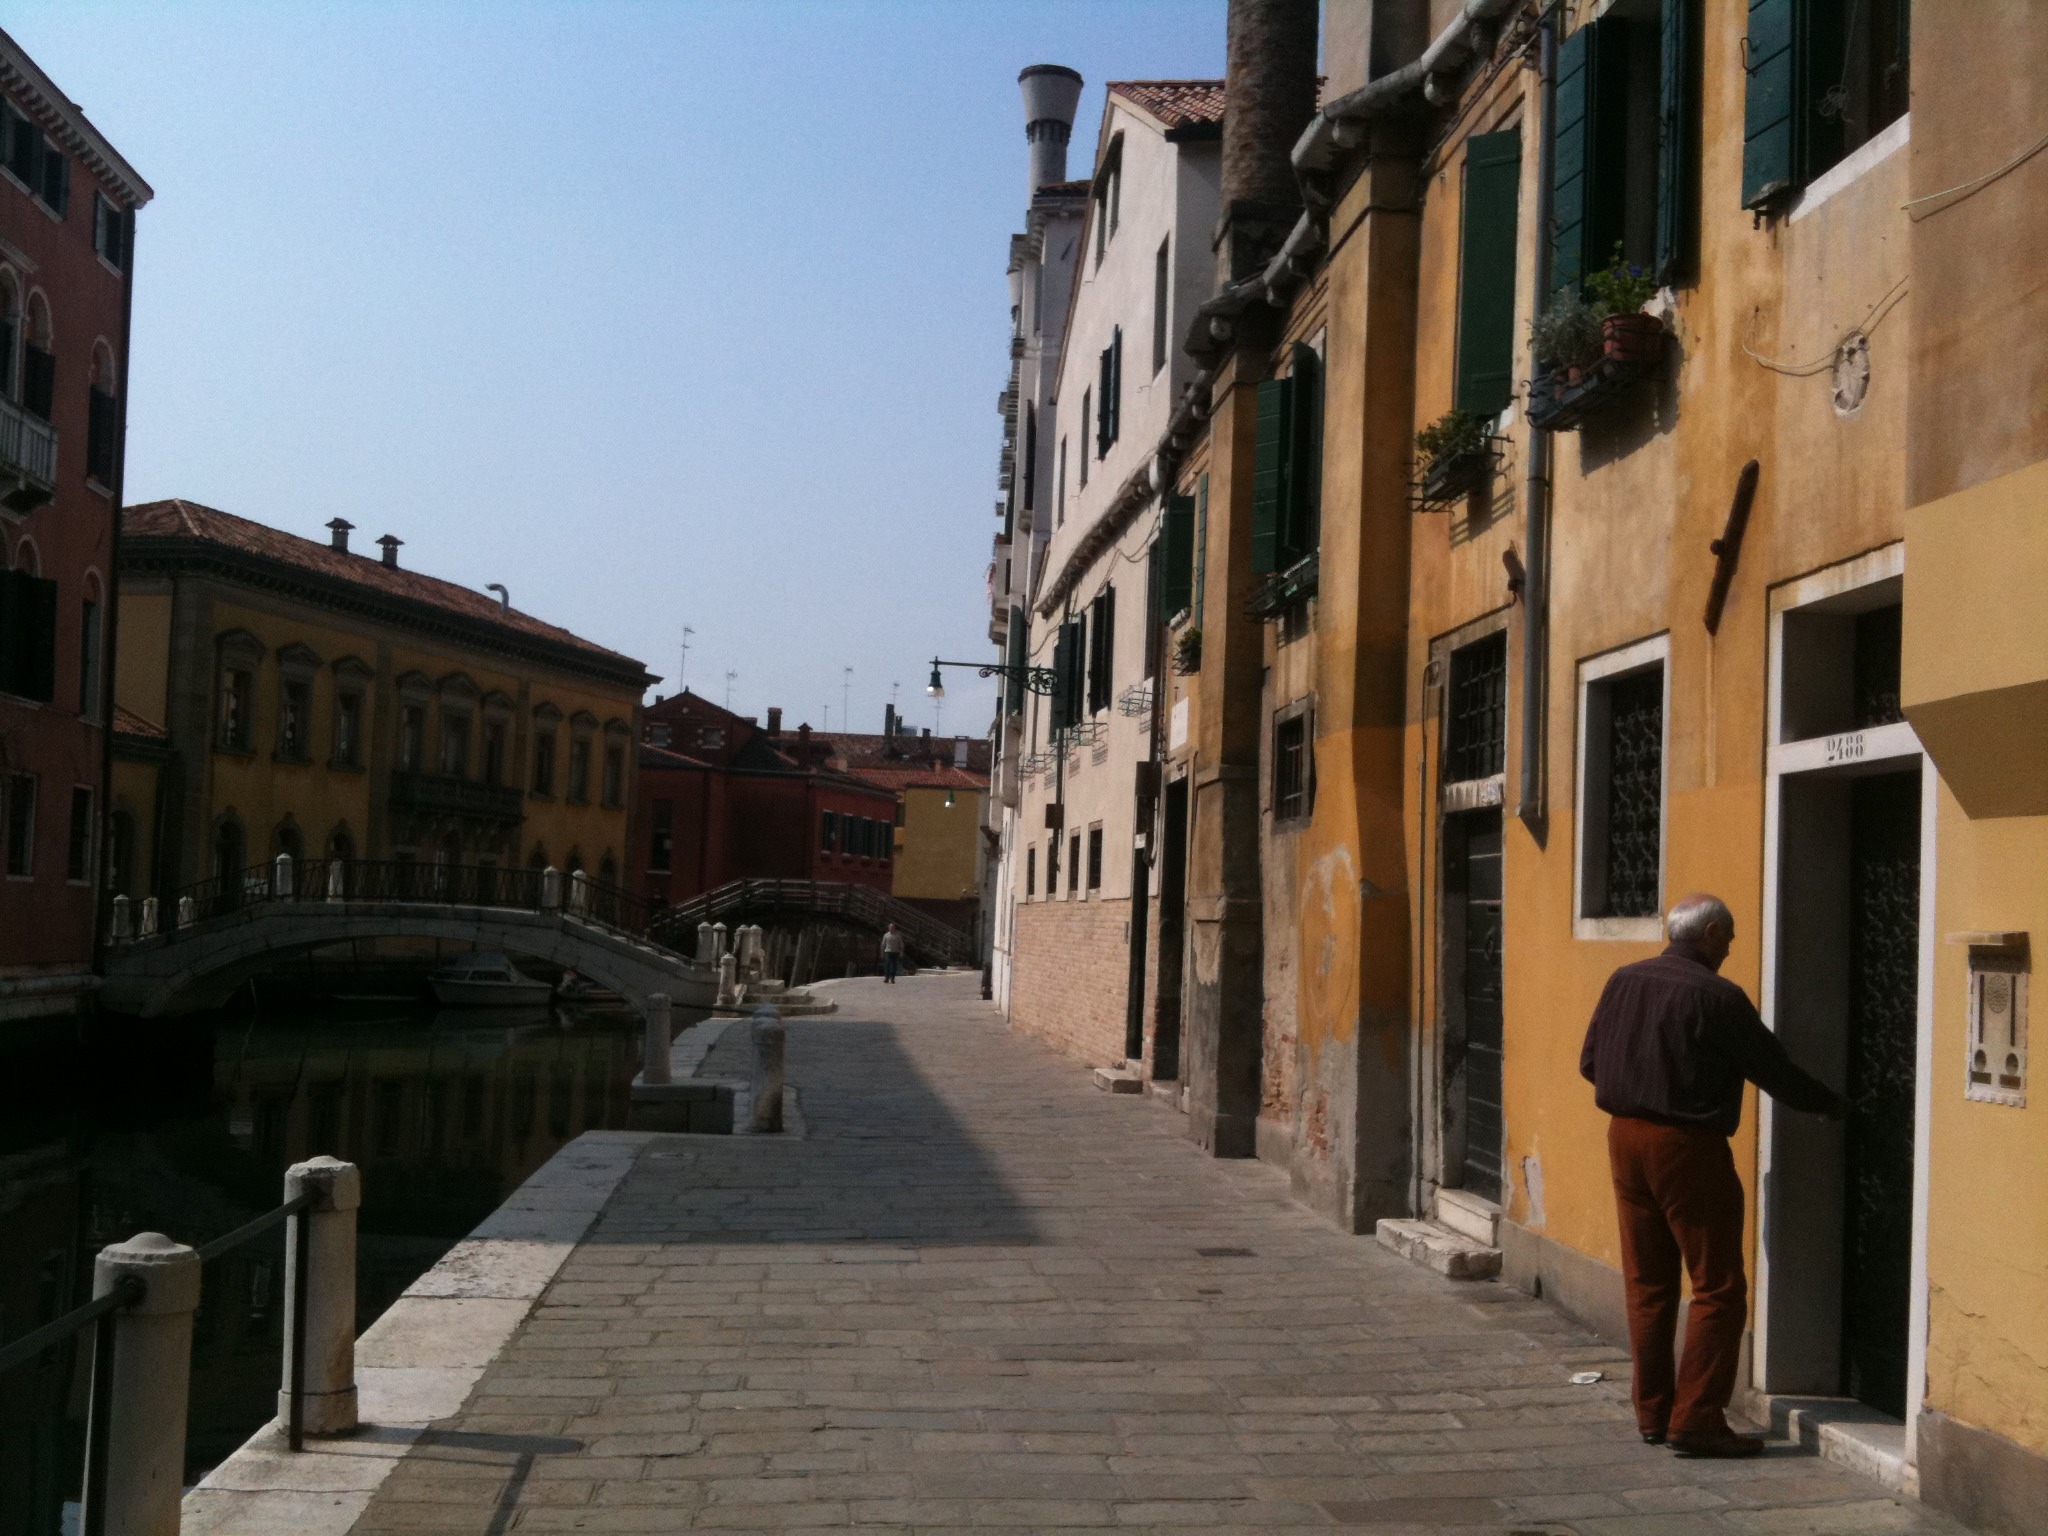 Venice - Mobile Photos - Days 1 & 2